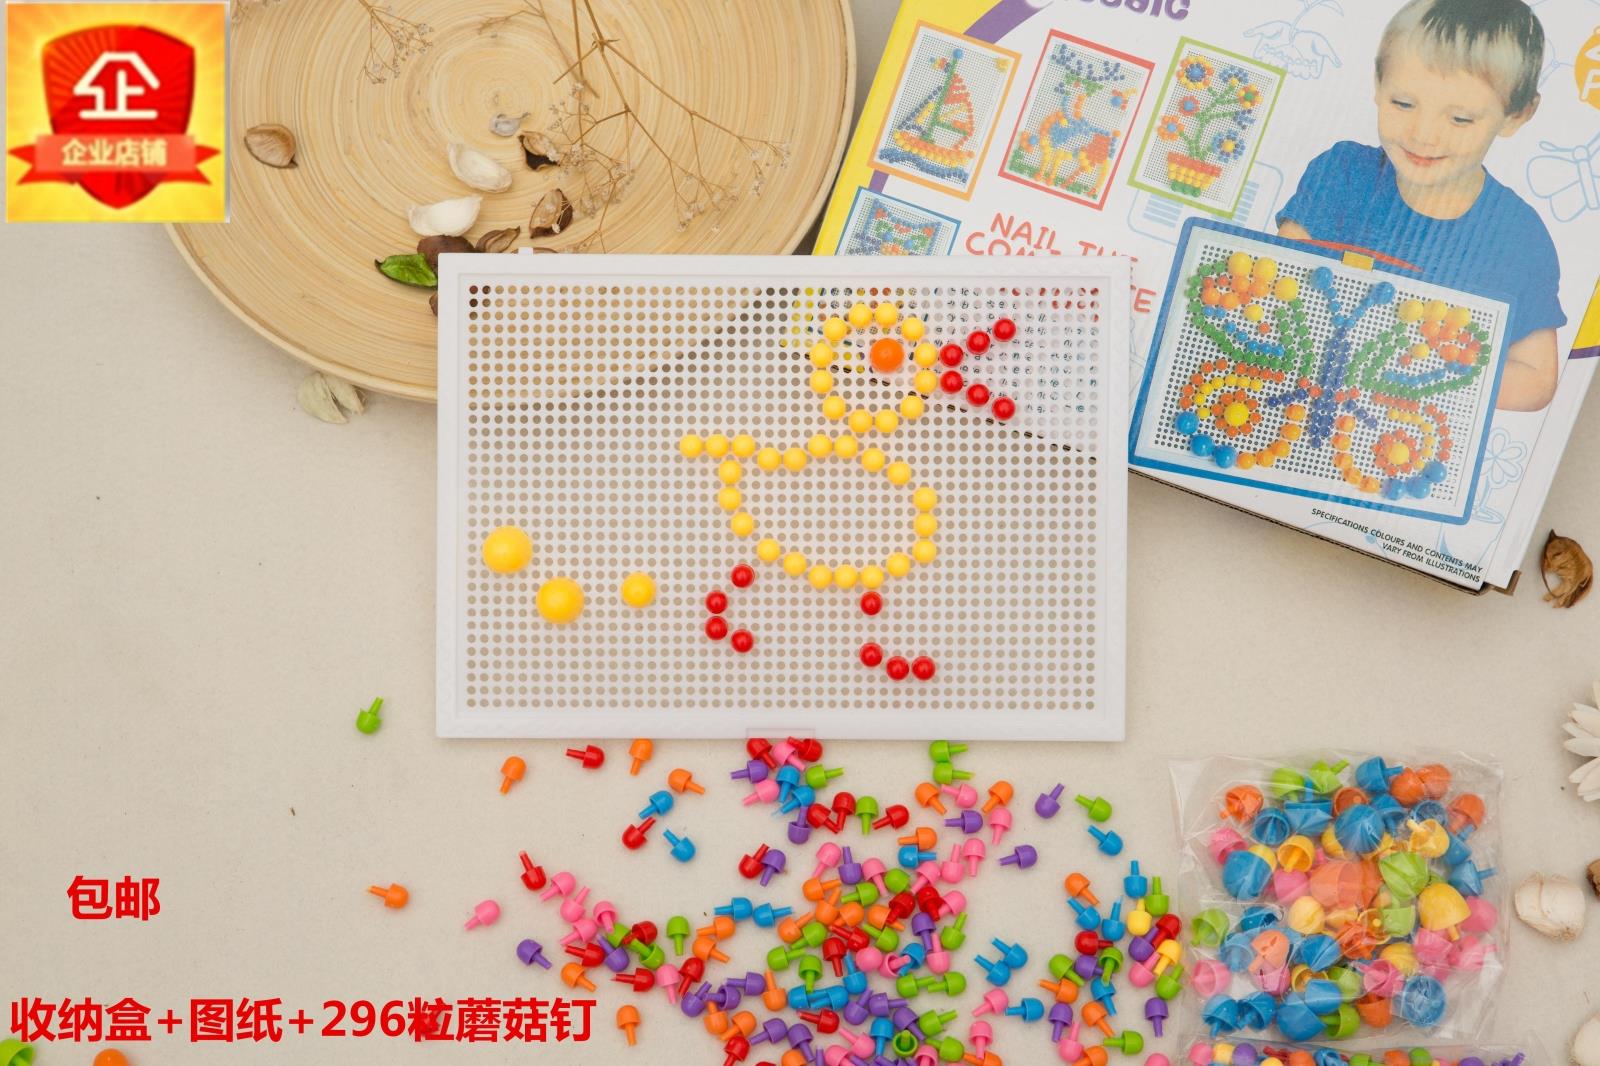 玩具蘑菇钉组合拼插板儿童拼插图DIY益智力幼儿园创意插图296粒